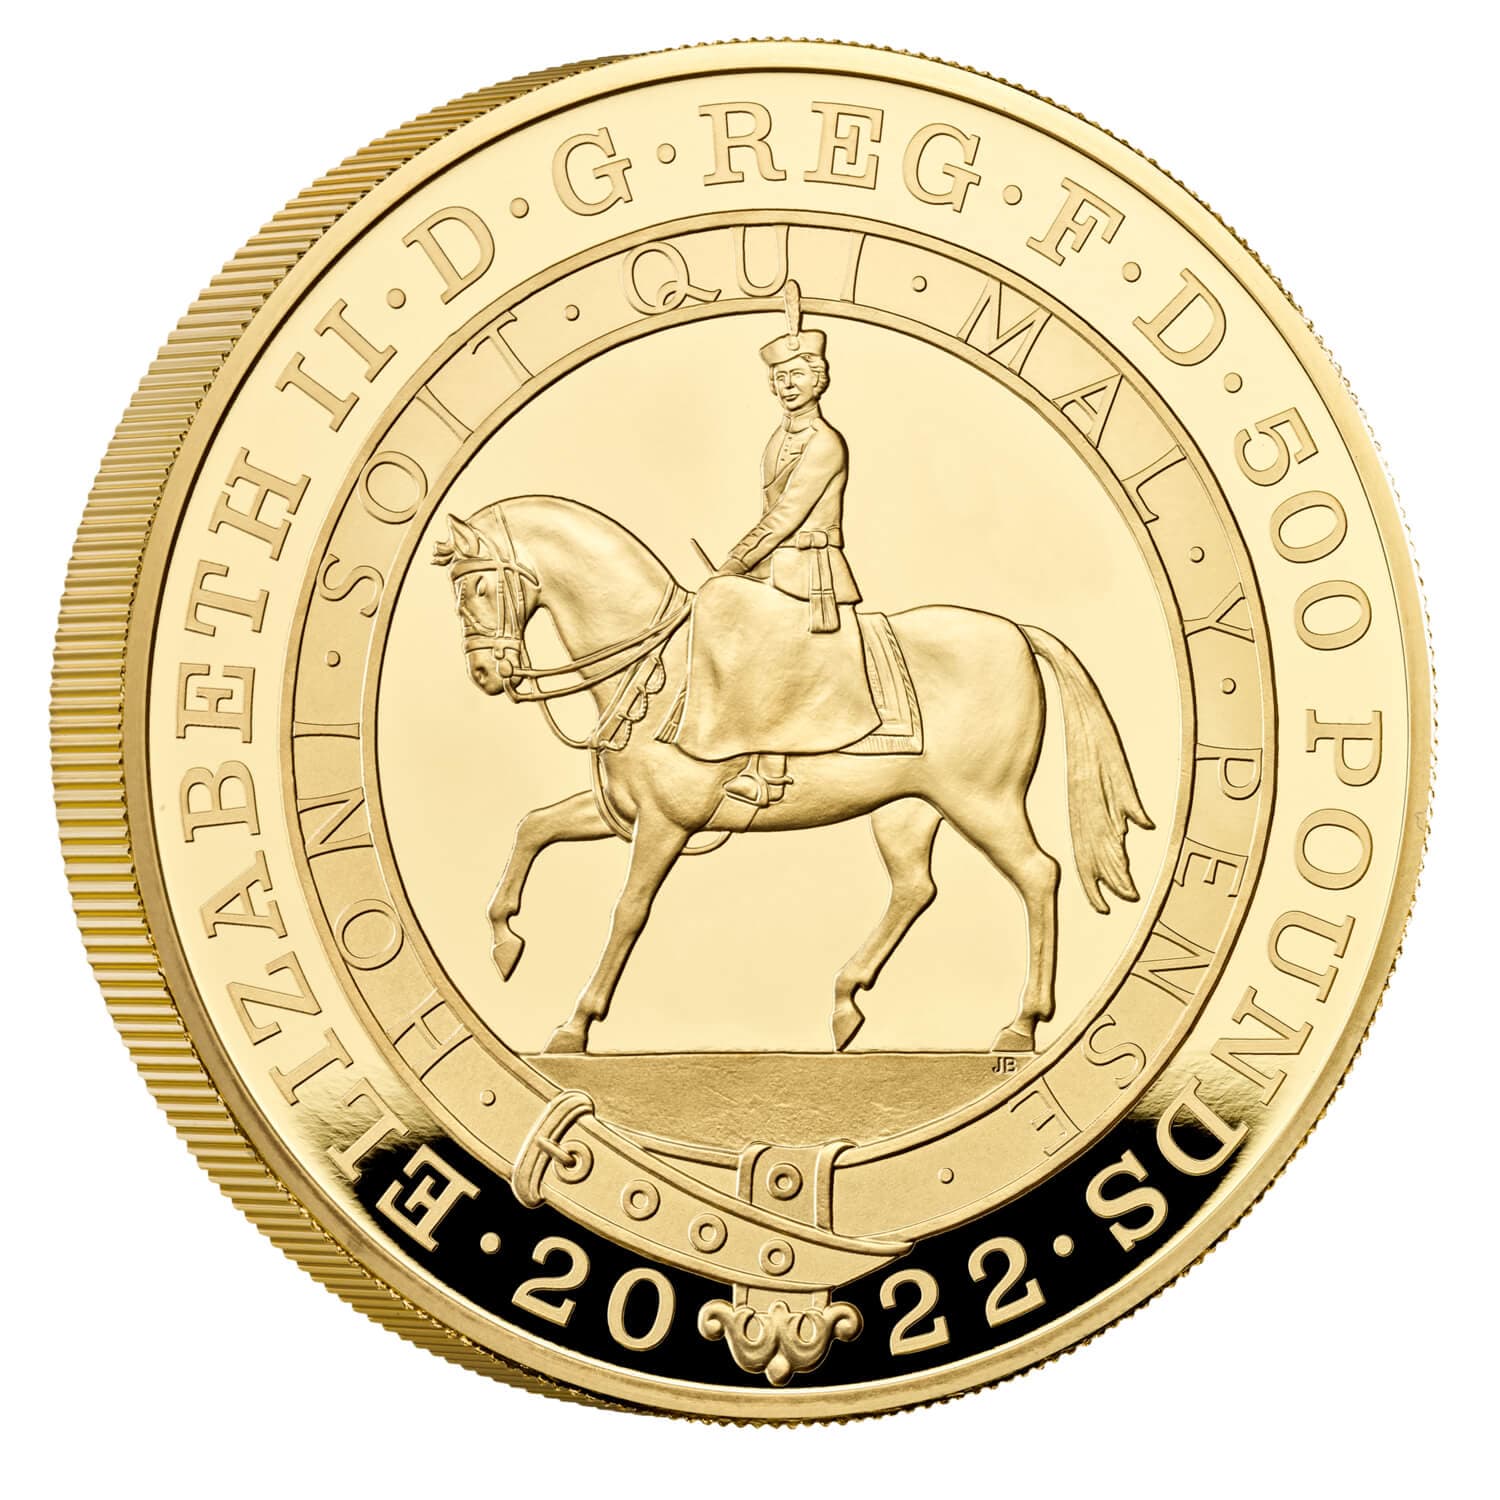 年 エリザベス女王即位周年記念 プラチナジュビリー 5オンス金貨